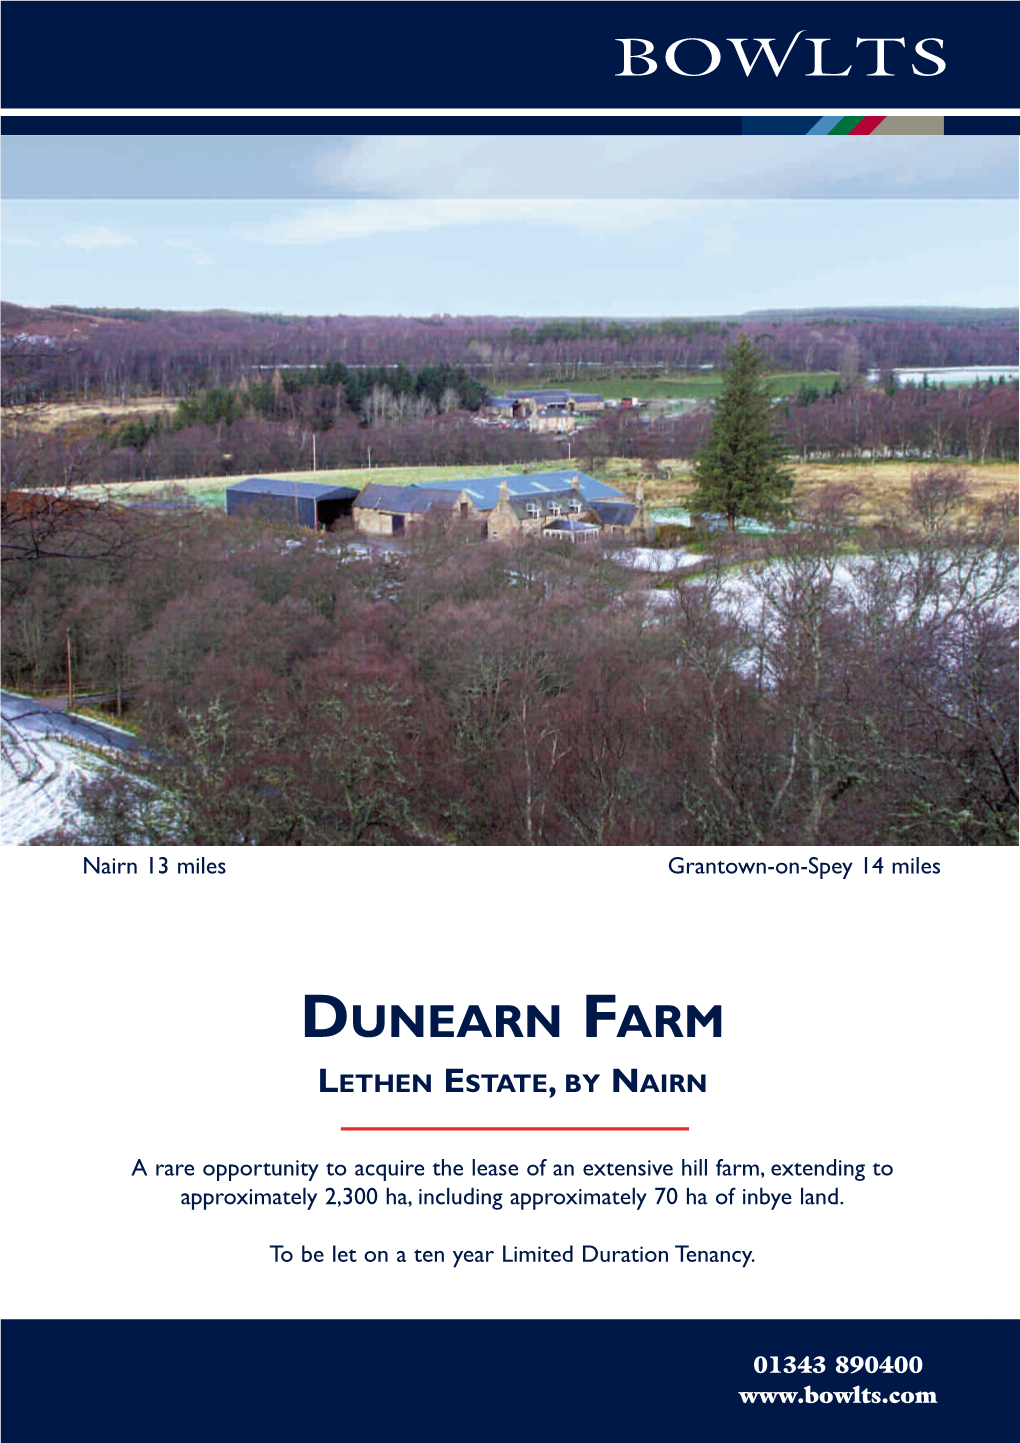 Dunearn Farm